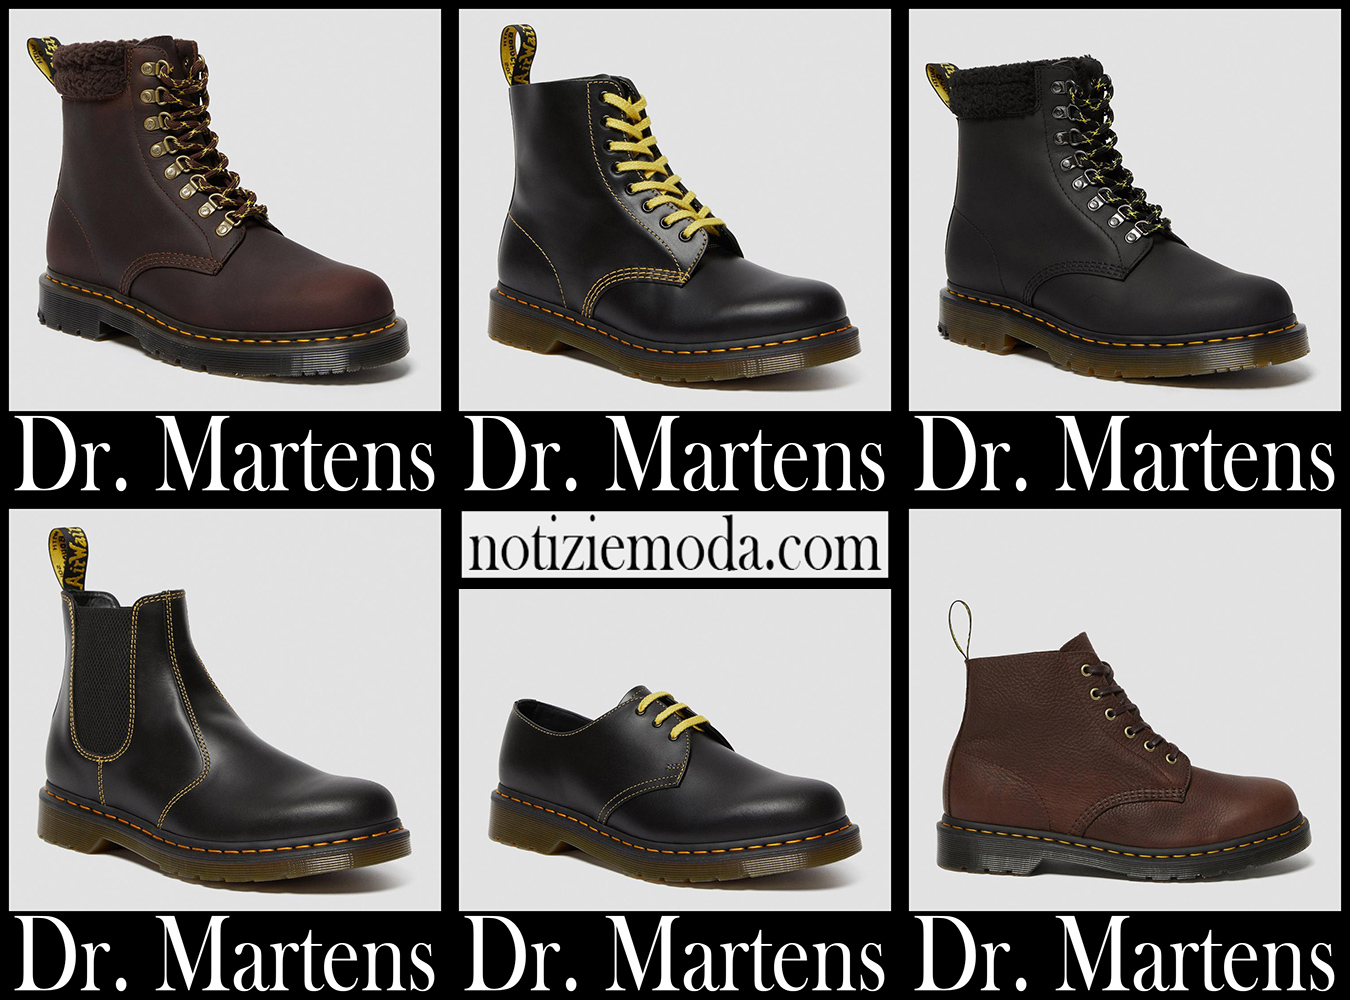 Nuovi arrivi scarpe Dr. Martens 2021 stivali moda uomo